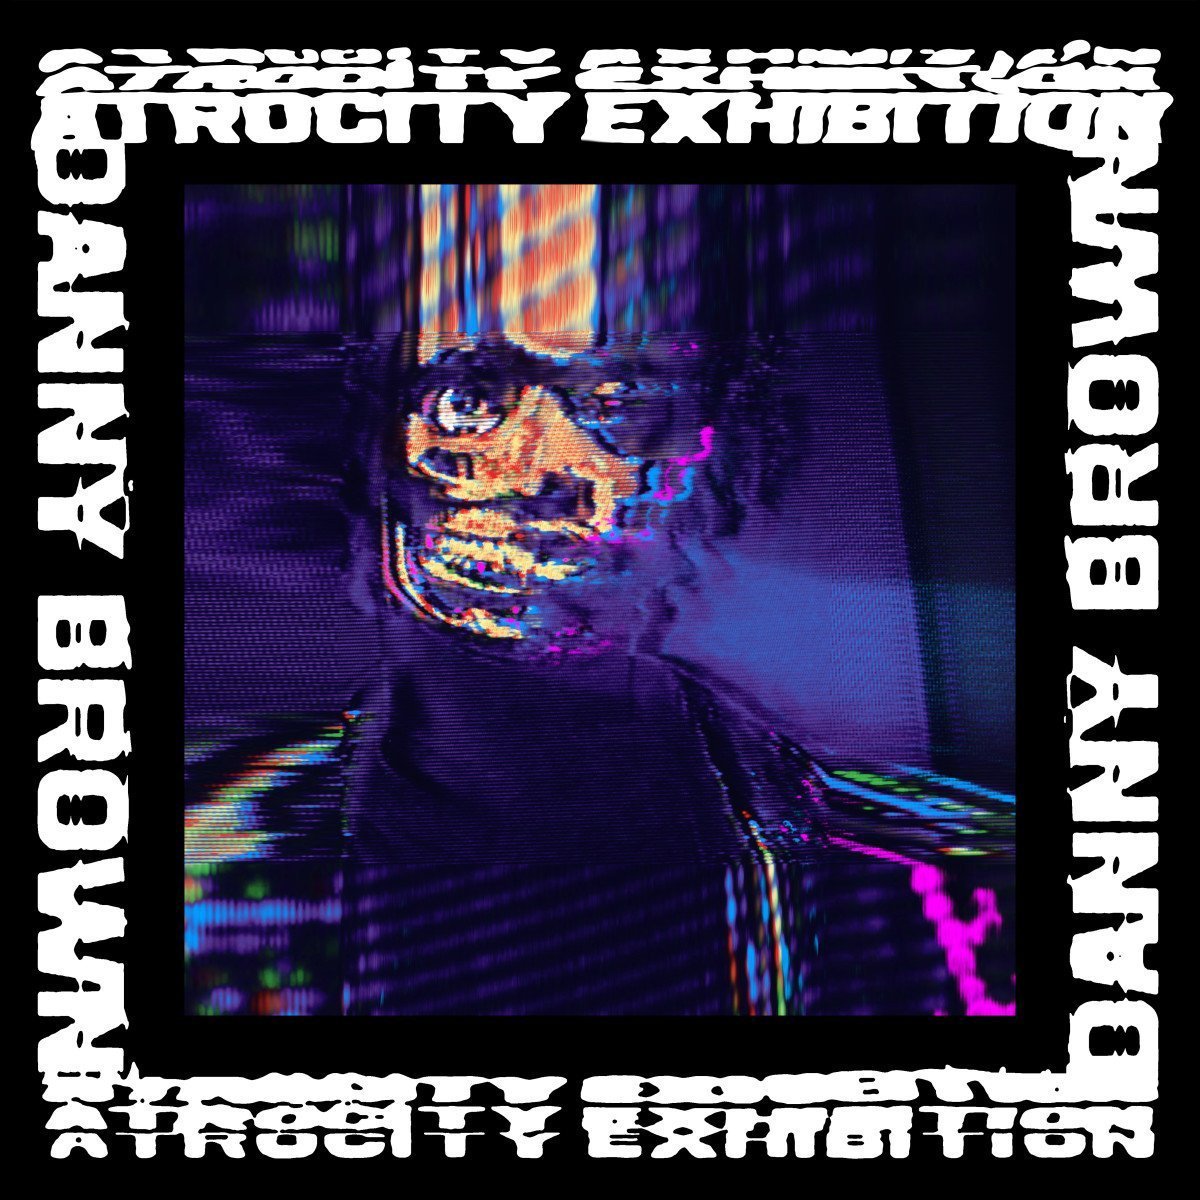 Vinile Danny Brown - Atrocity Exhibition (2 Lp) NUOVO SIGILLATO, EDIZIONE DEL 28/10/2016 SUBITO DISPONIBILE